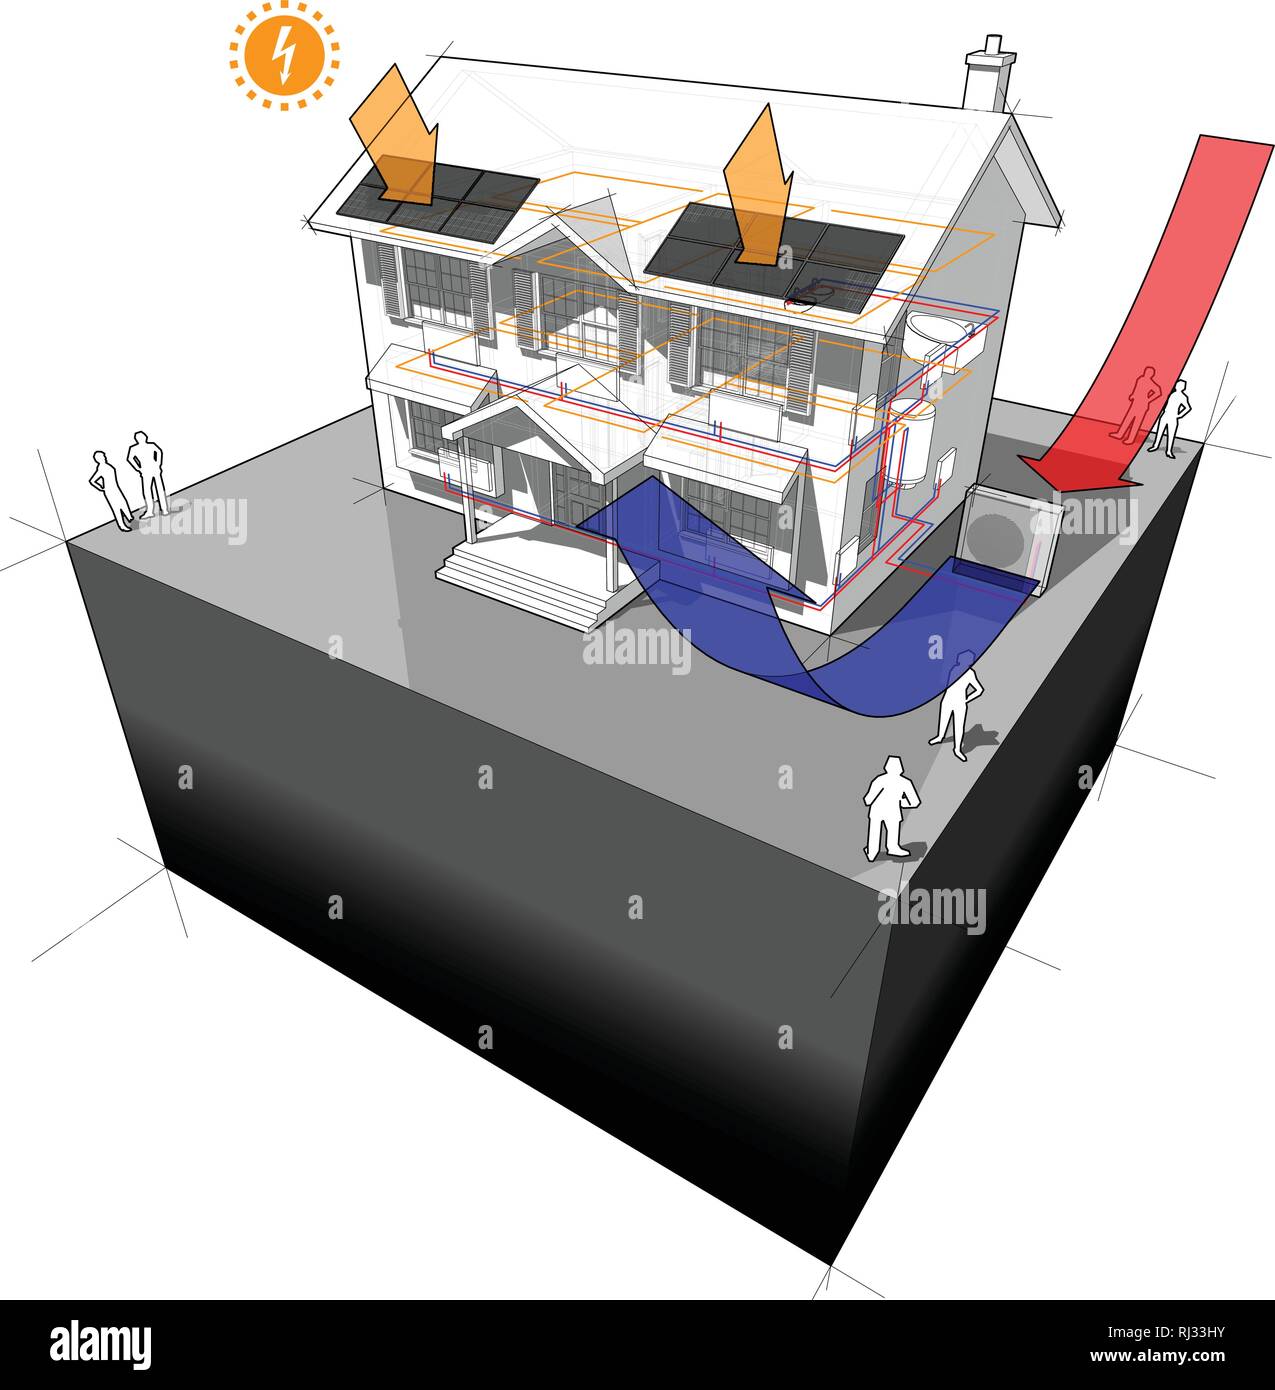 Schema di una classica casa coloniale con una sorgente di aria a pompa di calore come fonte di energia per il riscaldamento a radiatori e pannelli fotovoltaici sul tetto come acido Illustrazione Vettoriale